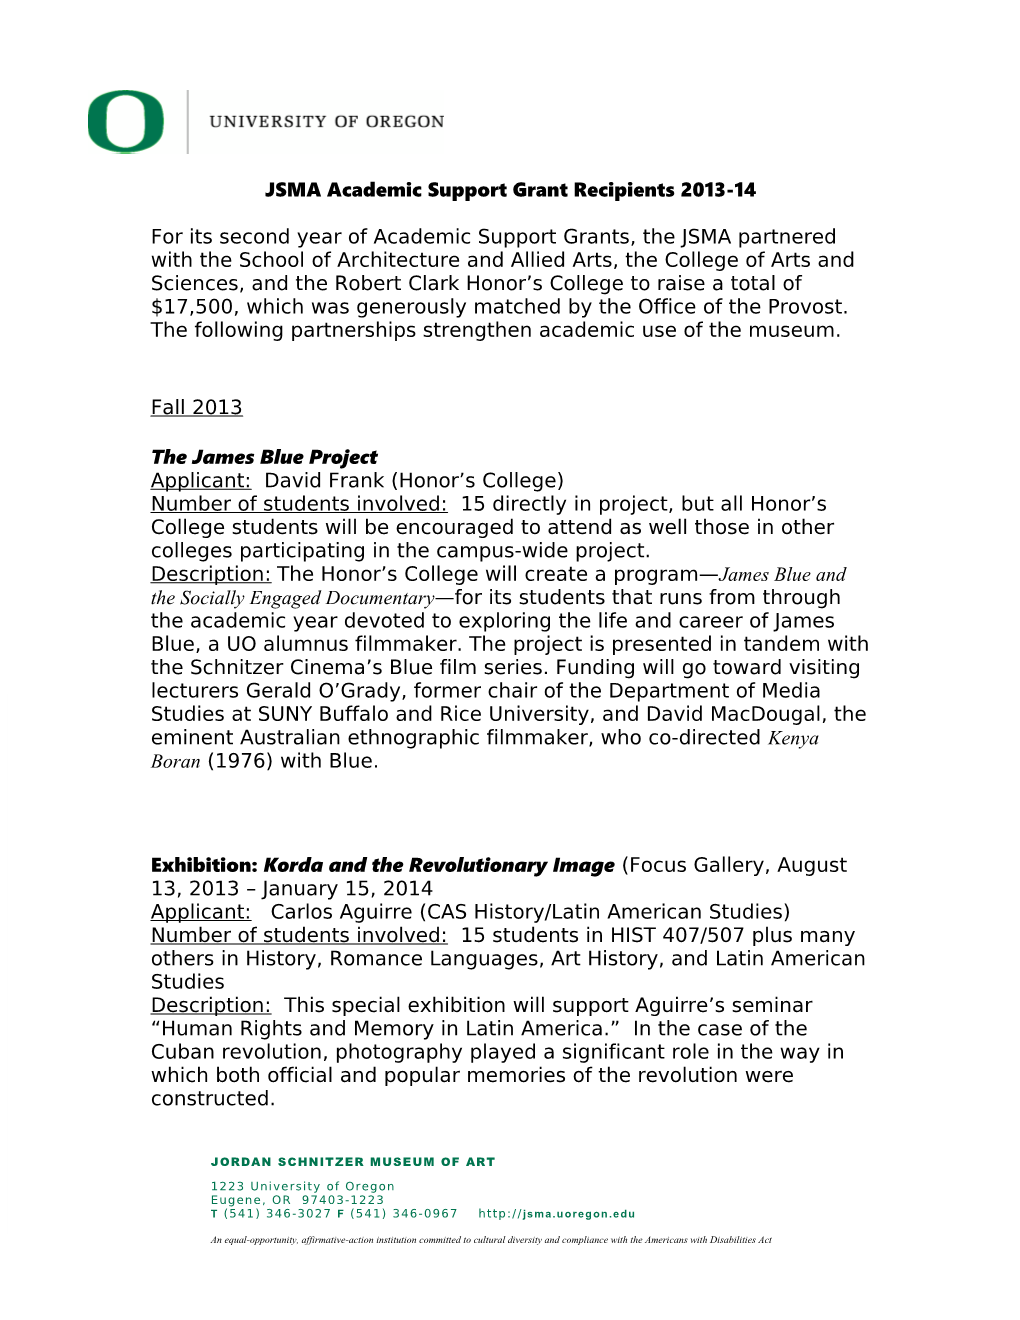 JSMA Academic Support Grant Recipients 2013-14